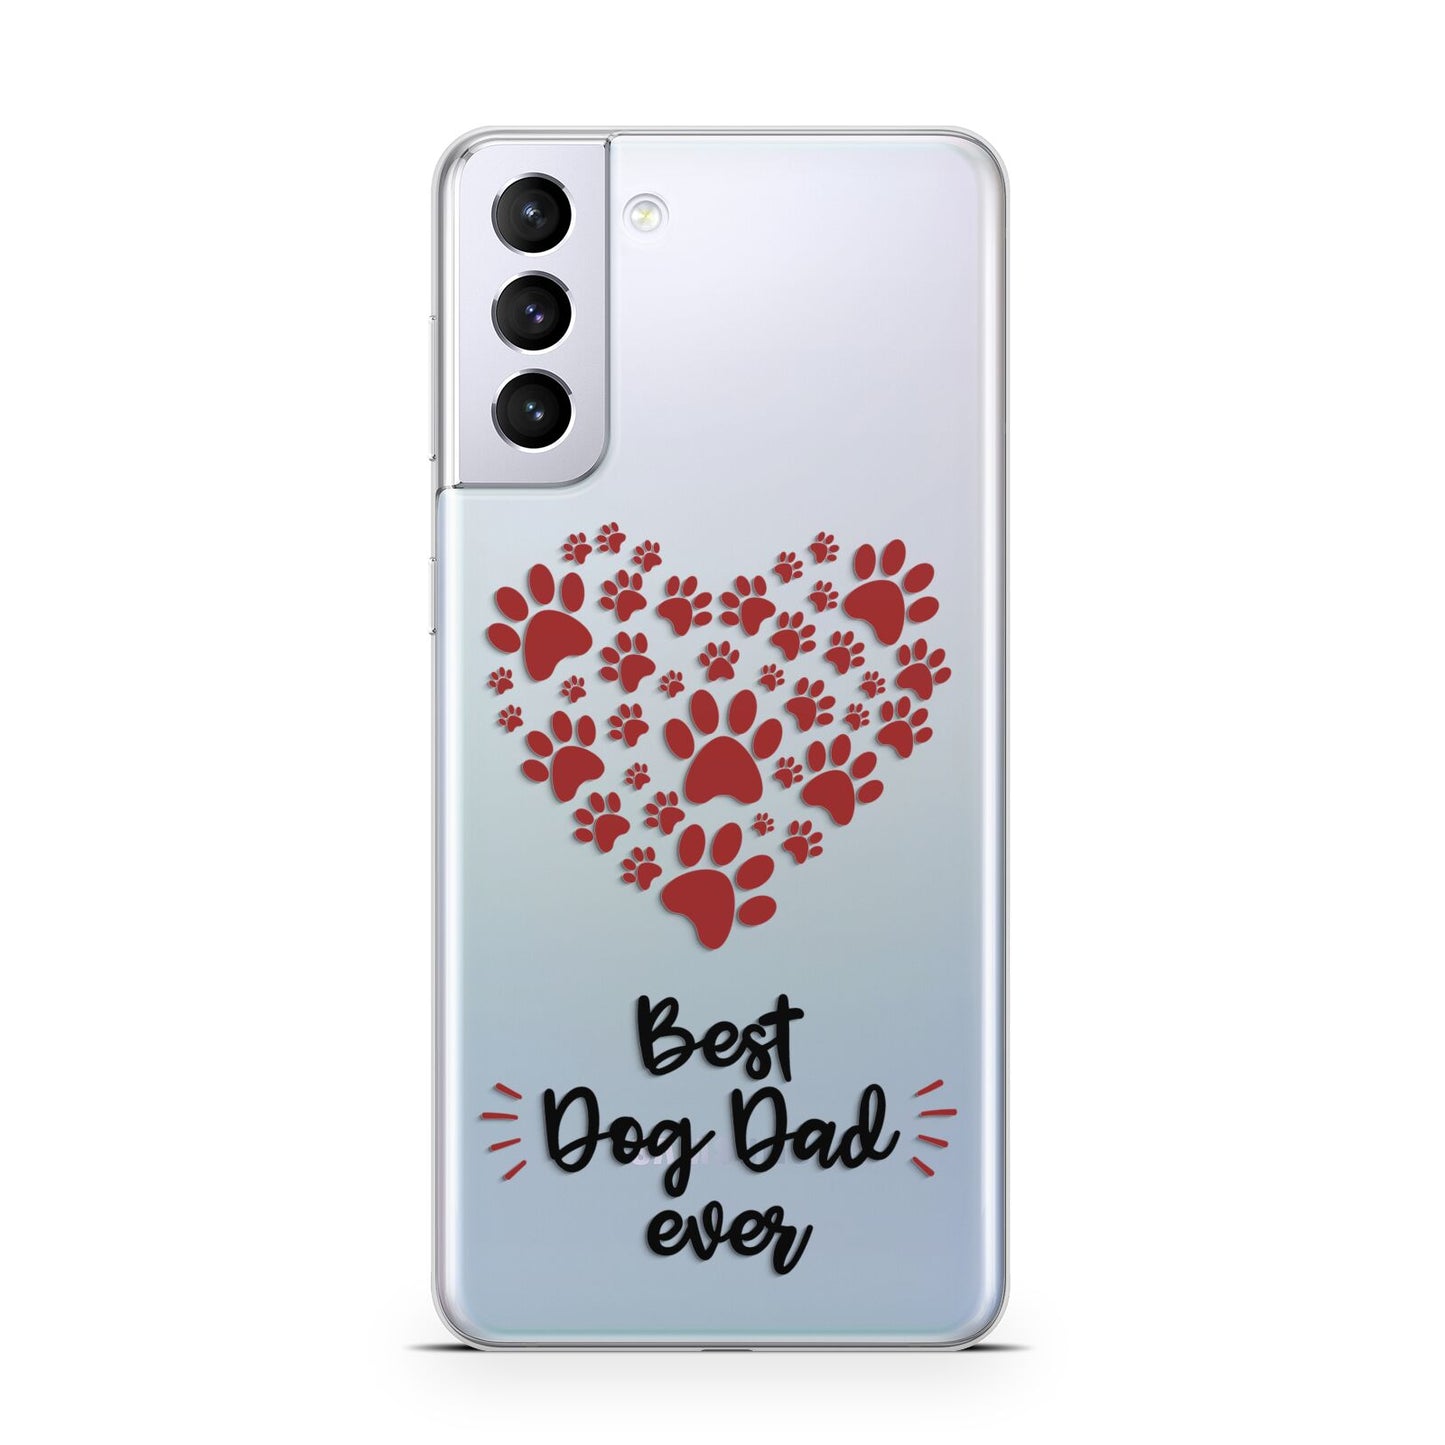 Best Dog Dad Paws Samsung S21 Plus Phone Case